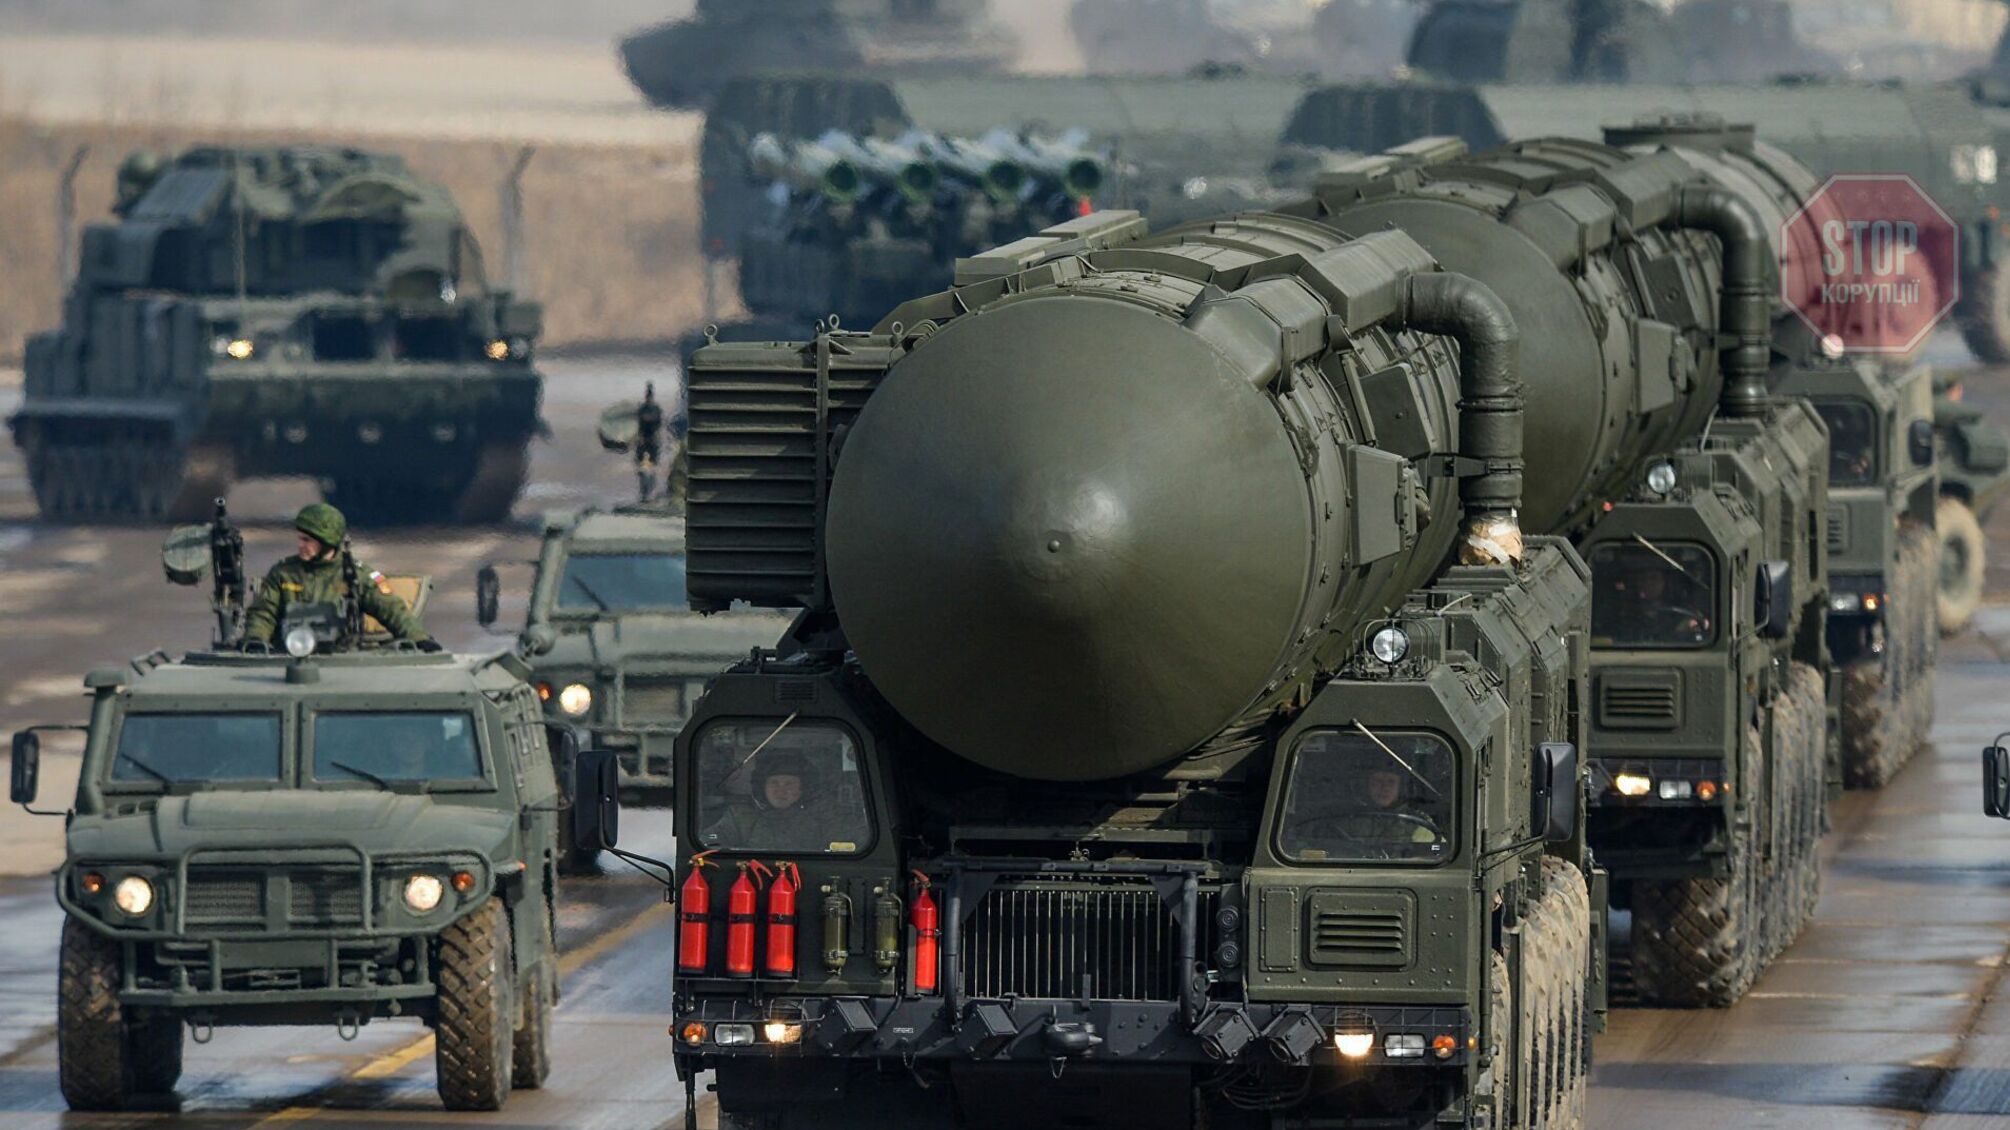 Беларусь готова разместить у себя ядерное оружие